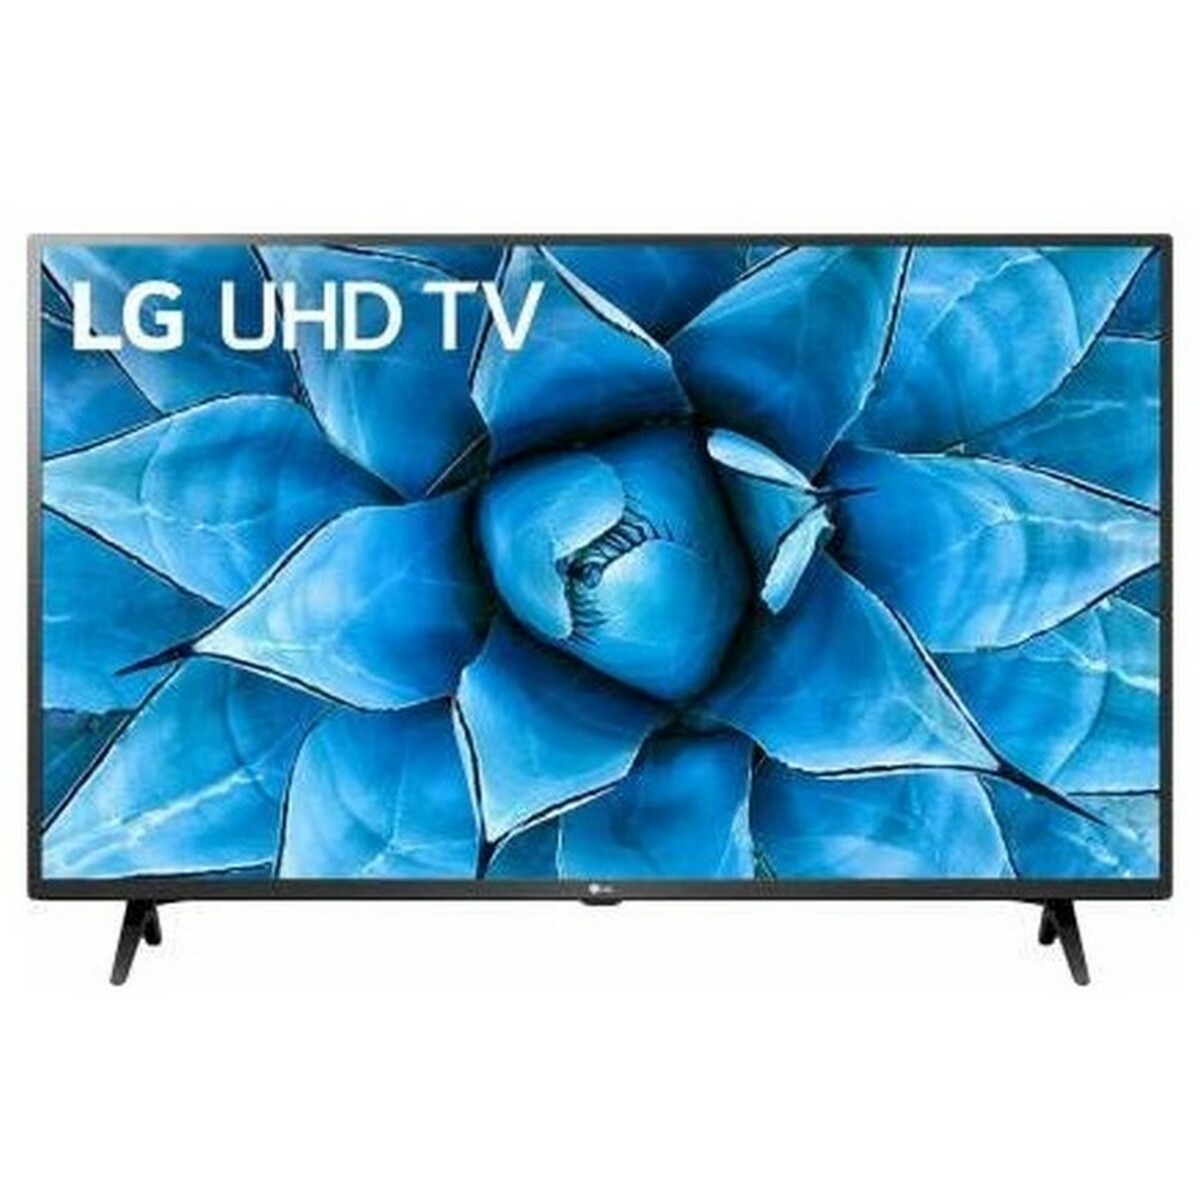 LG 4K Ultra HD LED TV 55UN7300PTC 55"